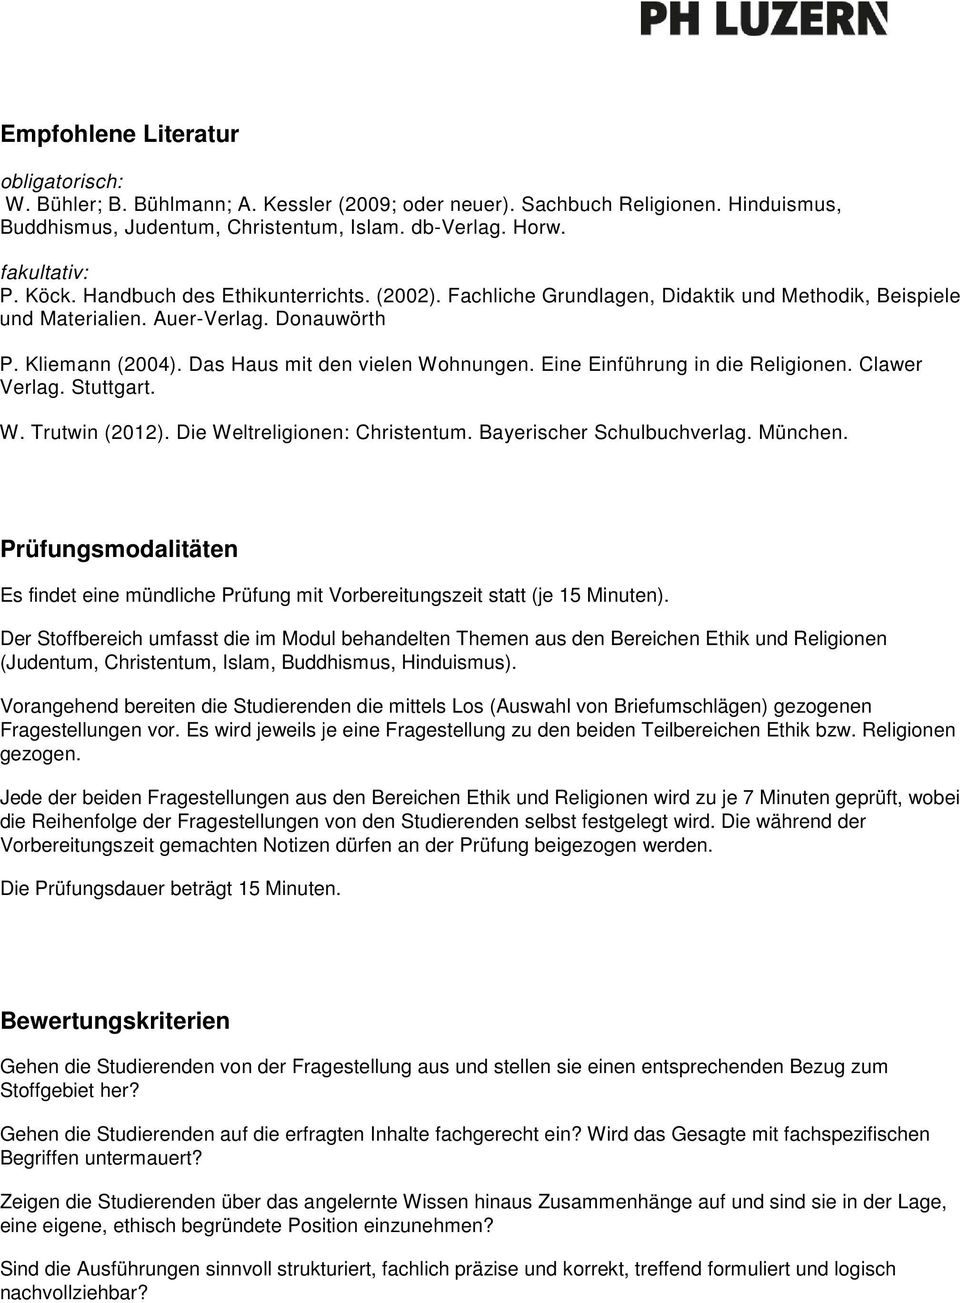 Eine Einführung in die Religionen. Clawer Verlag. Stuttgart. W. Trutwin (2012). Die Weltreligionen: Christentum. Bayerischer Schulbuchverlag. München.